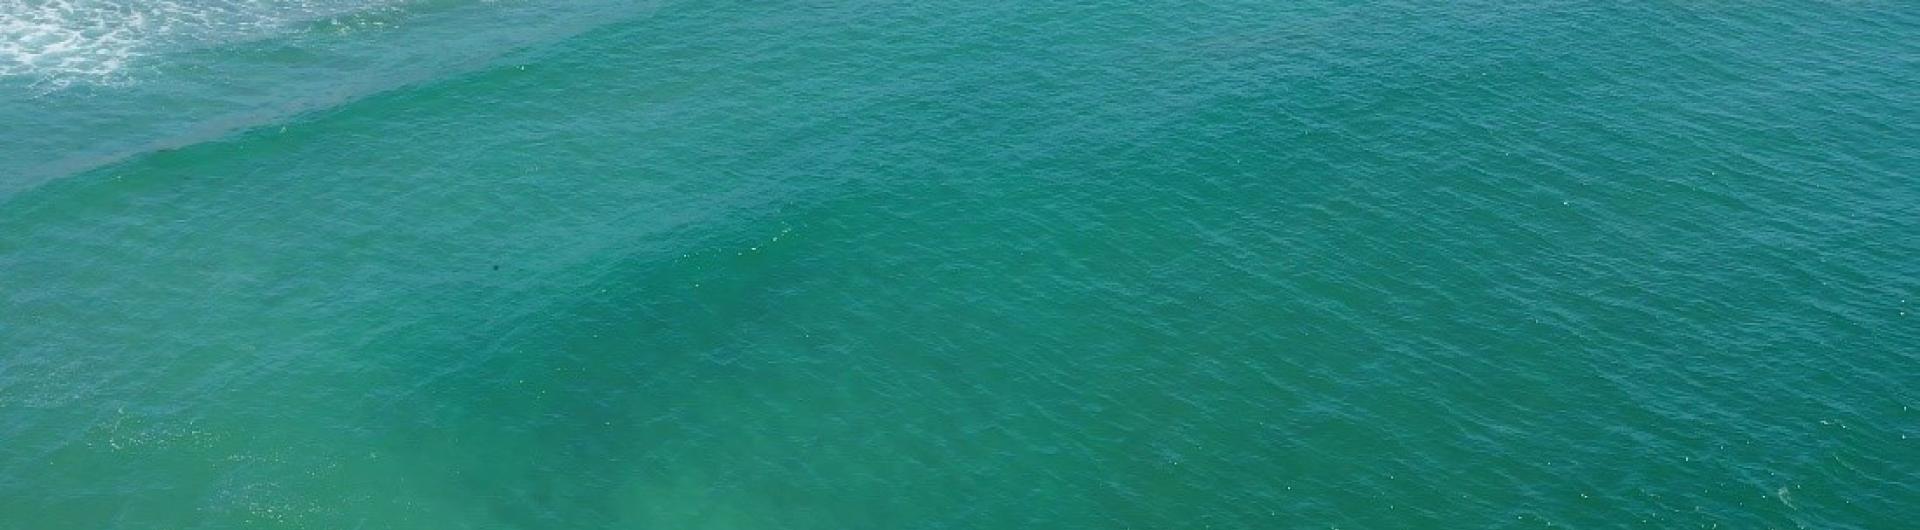 White shark cruising by the beach